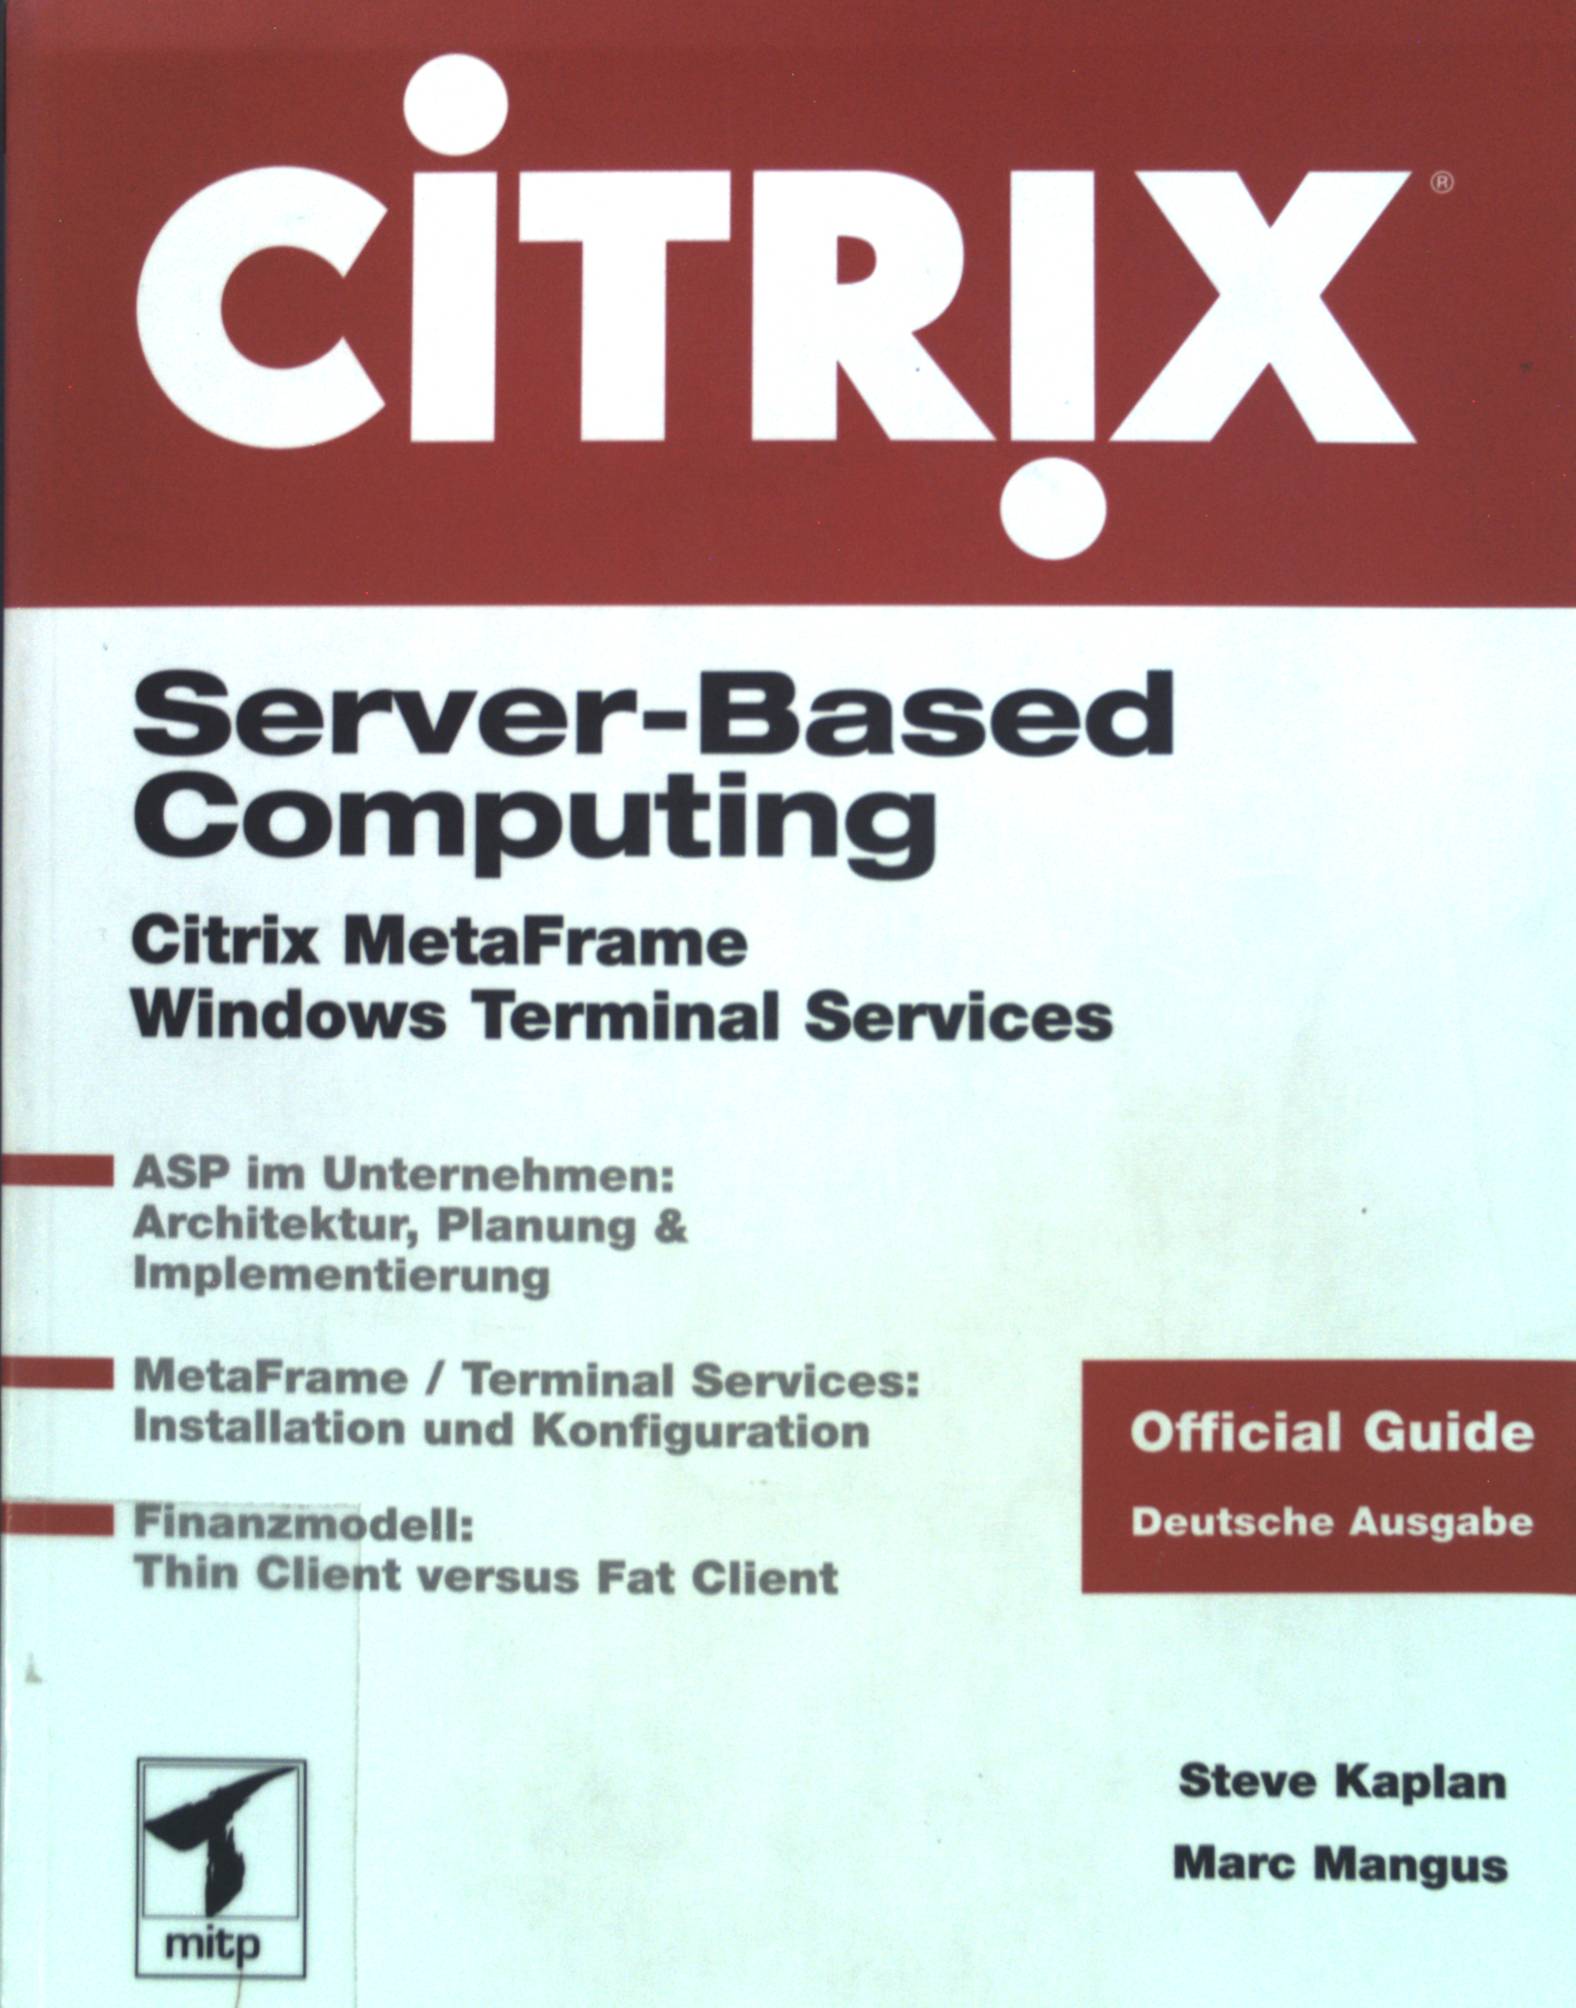 Server based computing : Citrix MetaFrame, Windows Terminal Services ; [ASP im Unternehmen: Architektur, Planung & Implementierung ; MetaFrame.  Dt. Ausg., 1. Aufl. - Kaplan, Steve und Marc Mangus